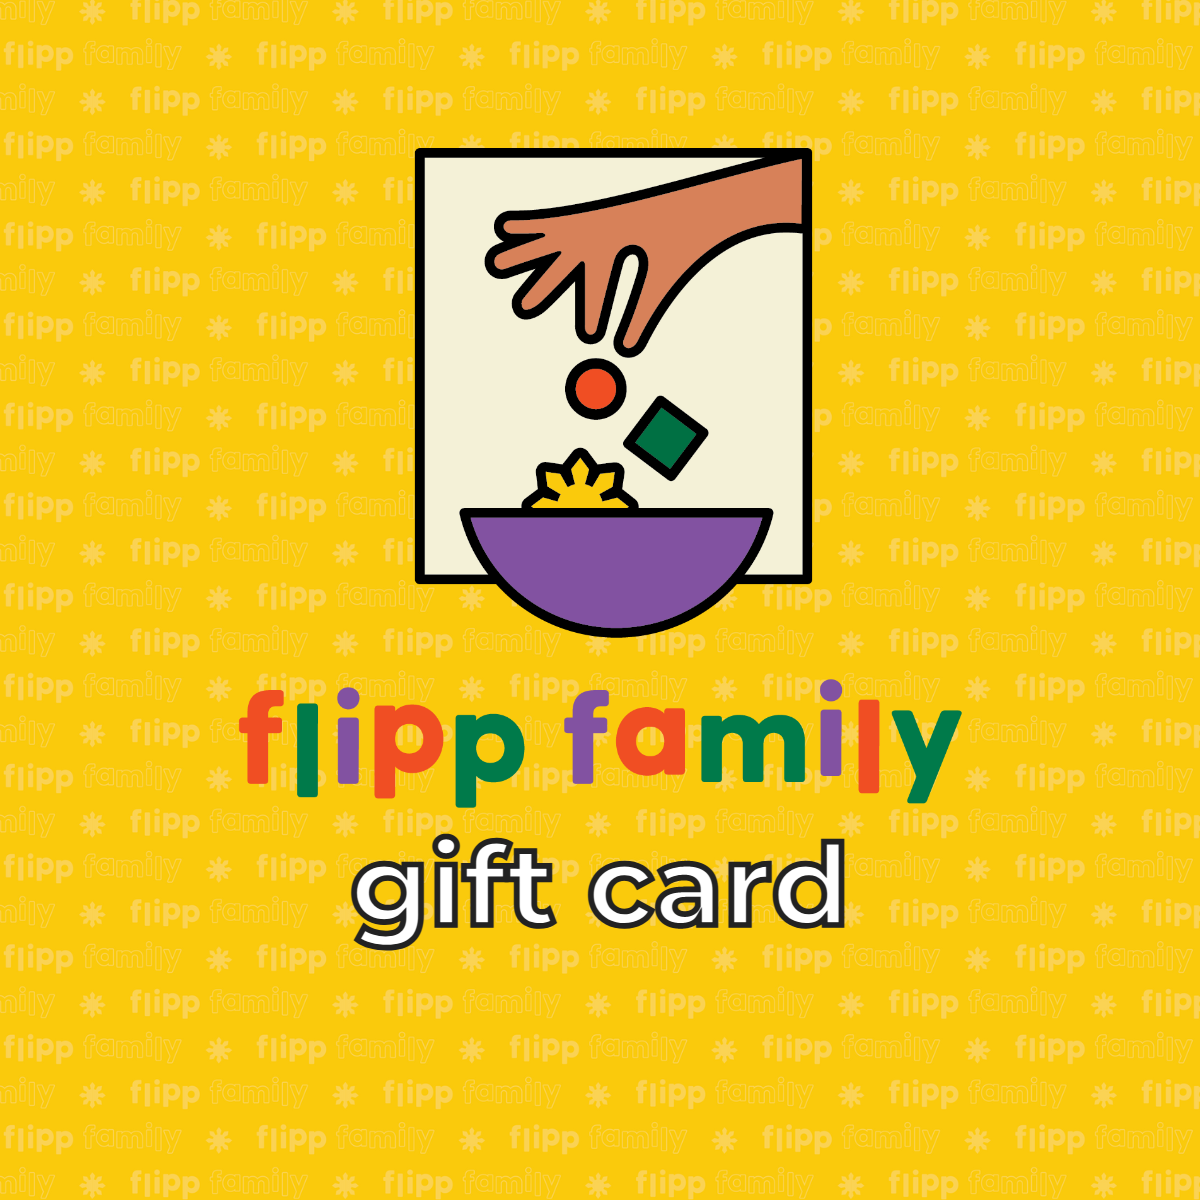 FLIPP FAMILY GIFT CARD